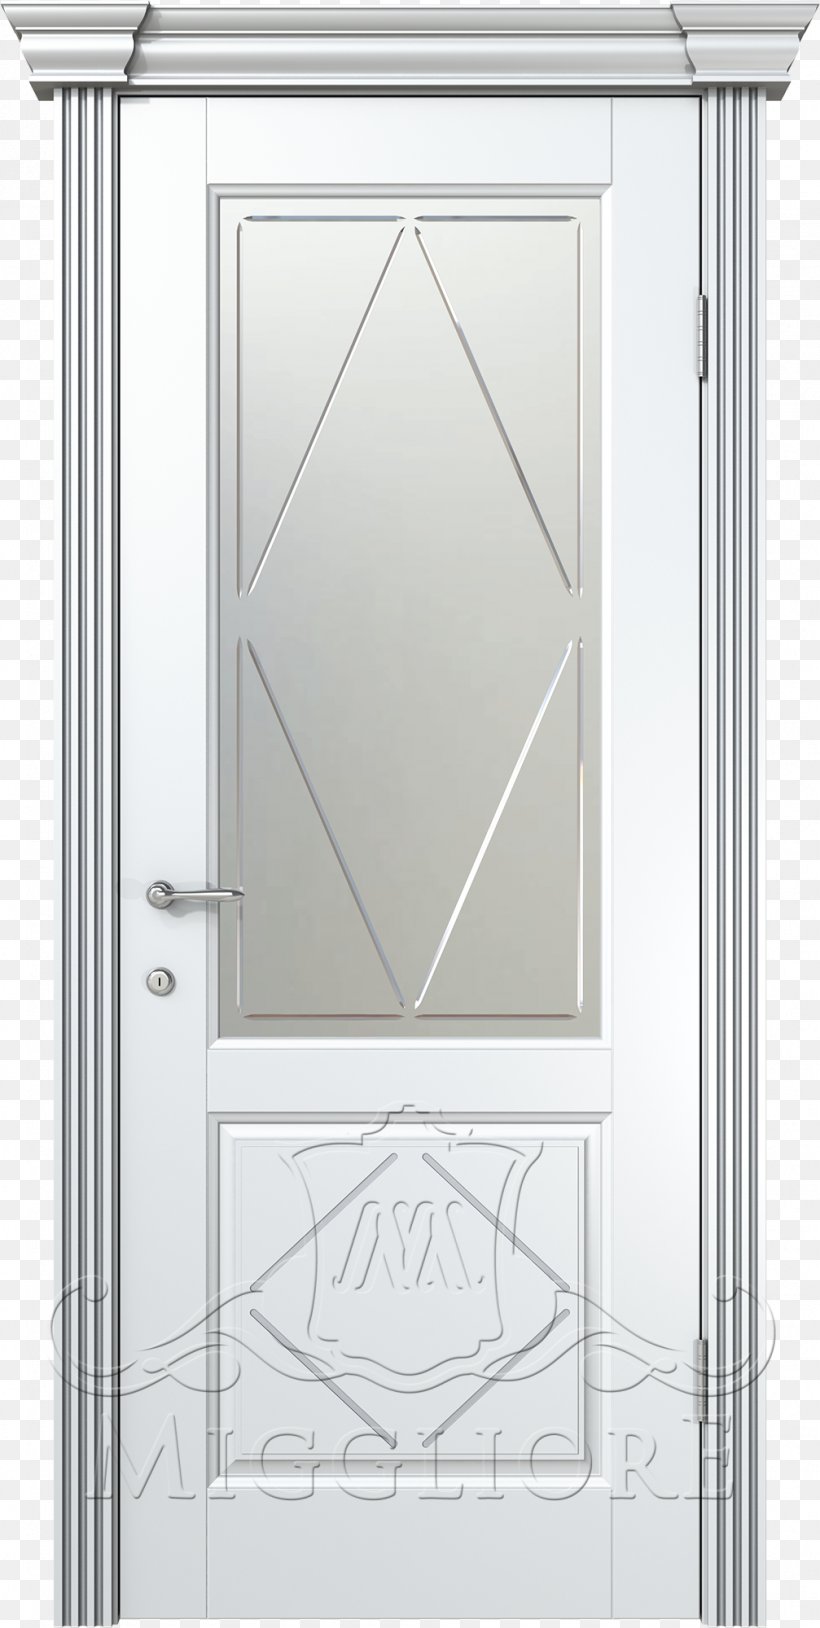 House Angle, PNG, 1007x2000px, House, Door, Home Door, Window Download Free